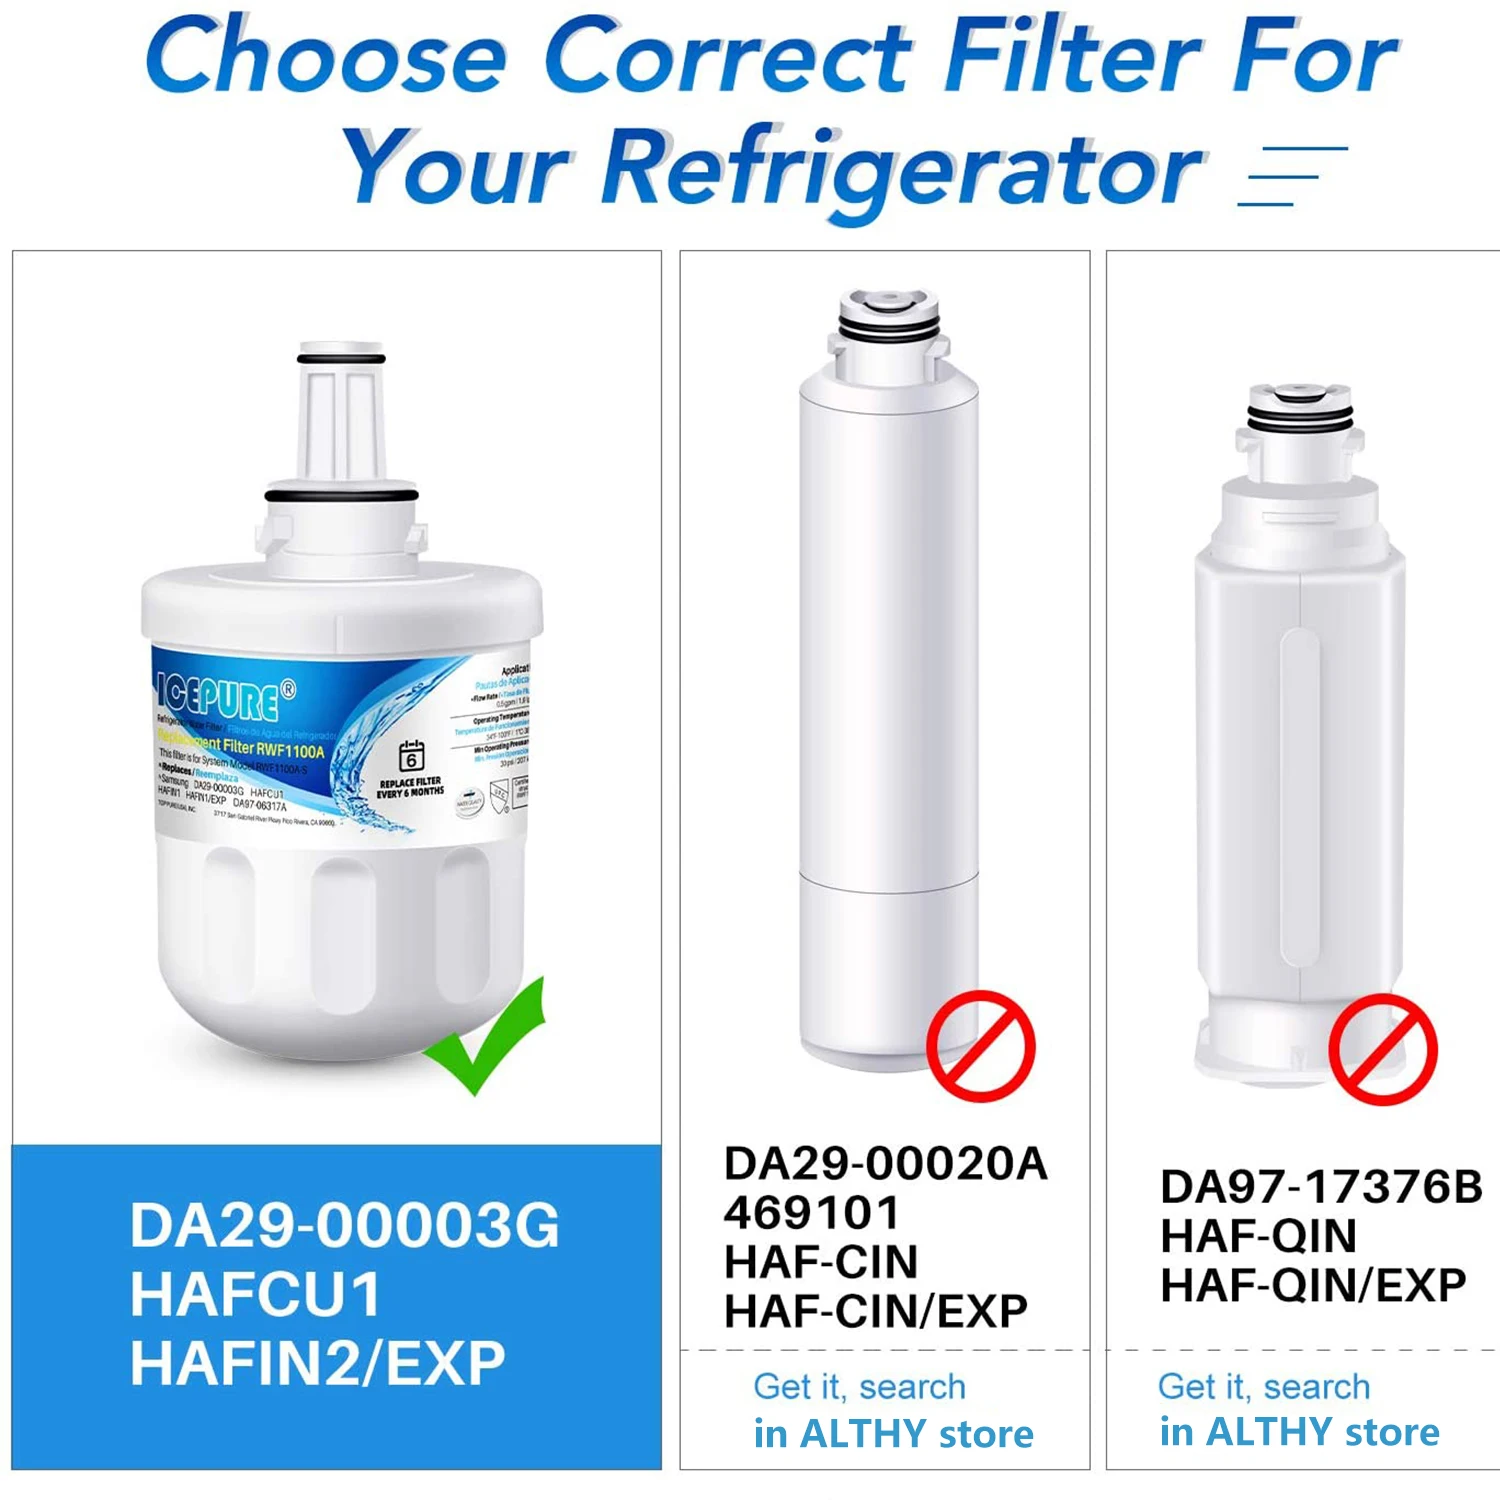 ICEPURE Refrigerator Water Filter Replacement for Samsung DA29-00003G, DA29-00003B, DA29-00003A, DA29-00003F Aqua-Pure Plus enlarge